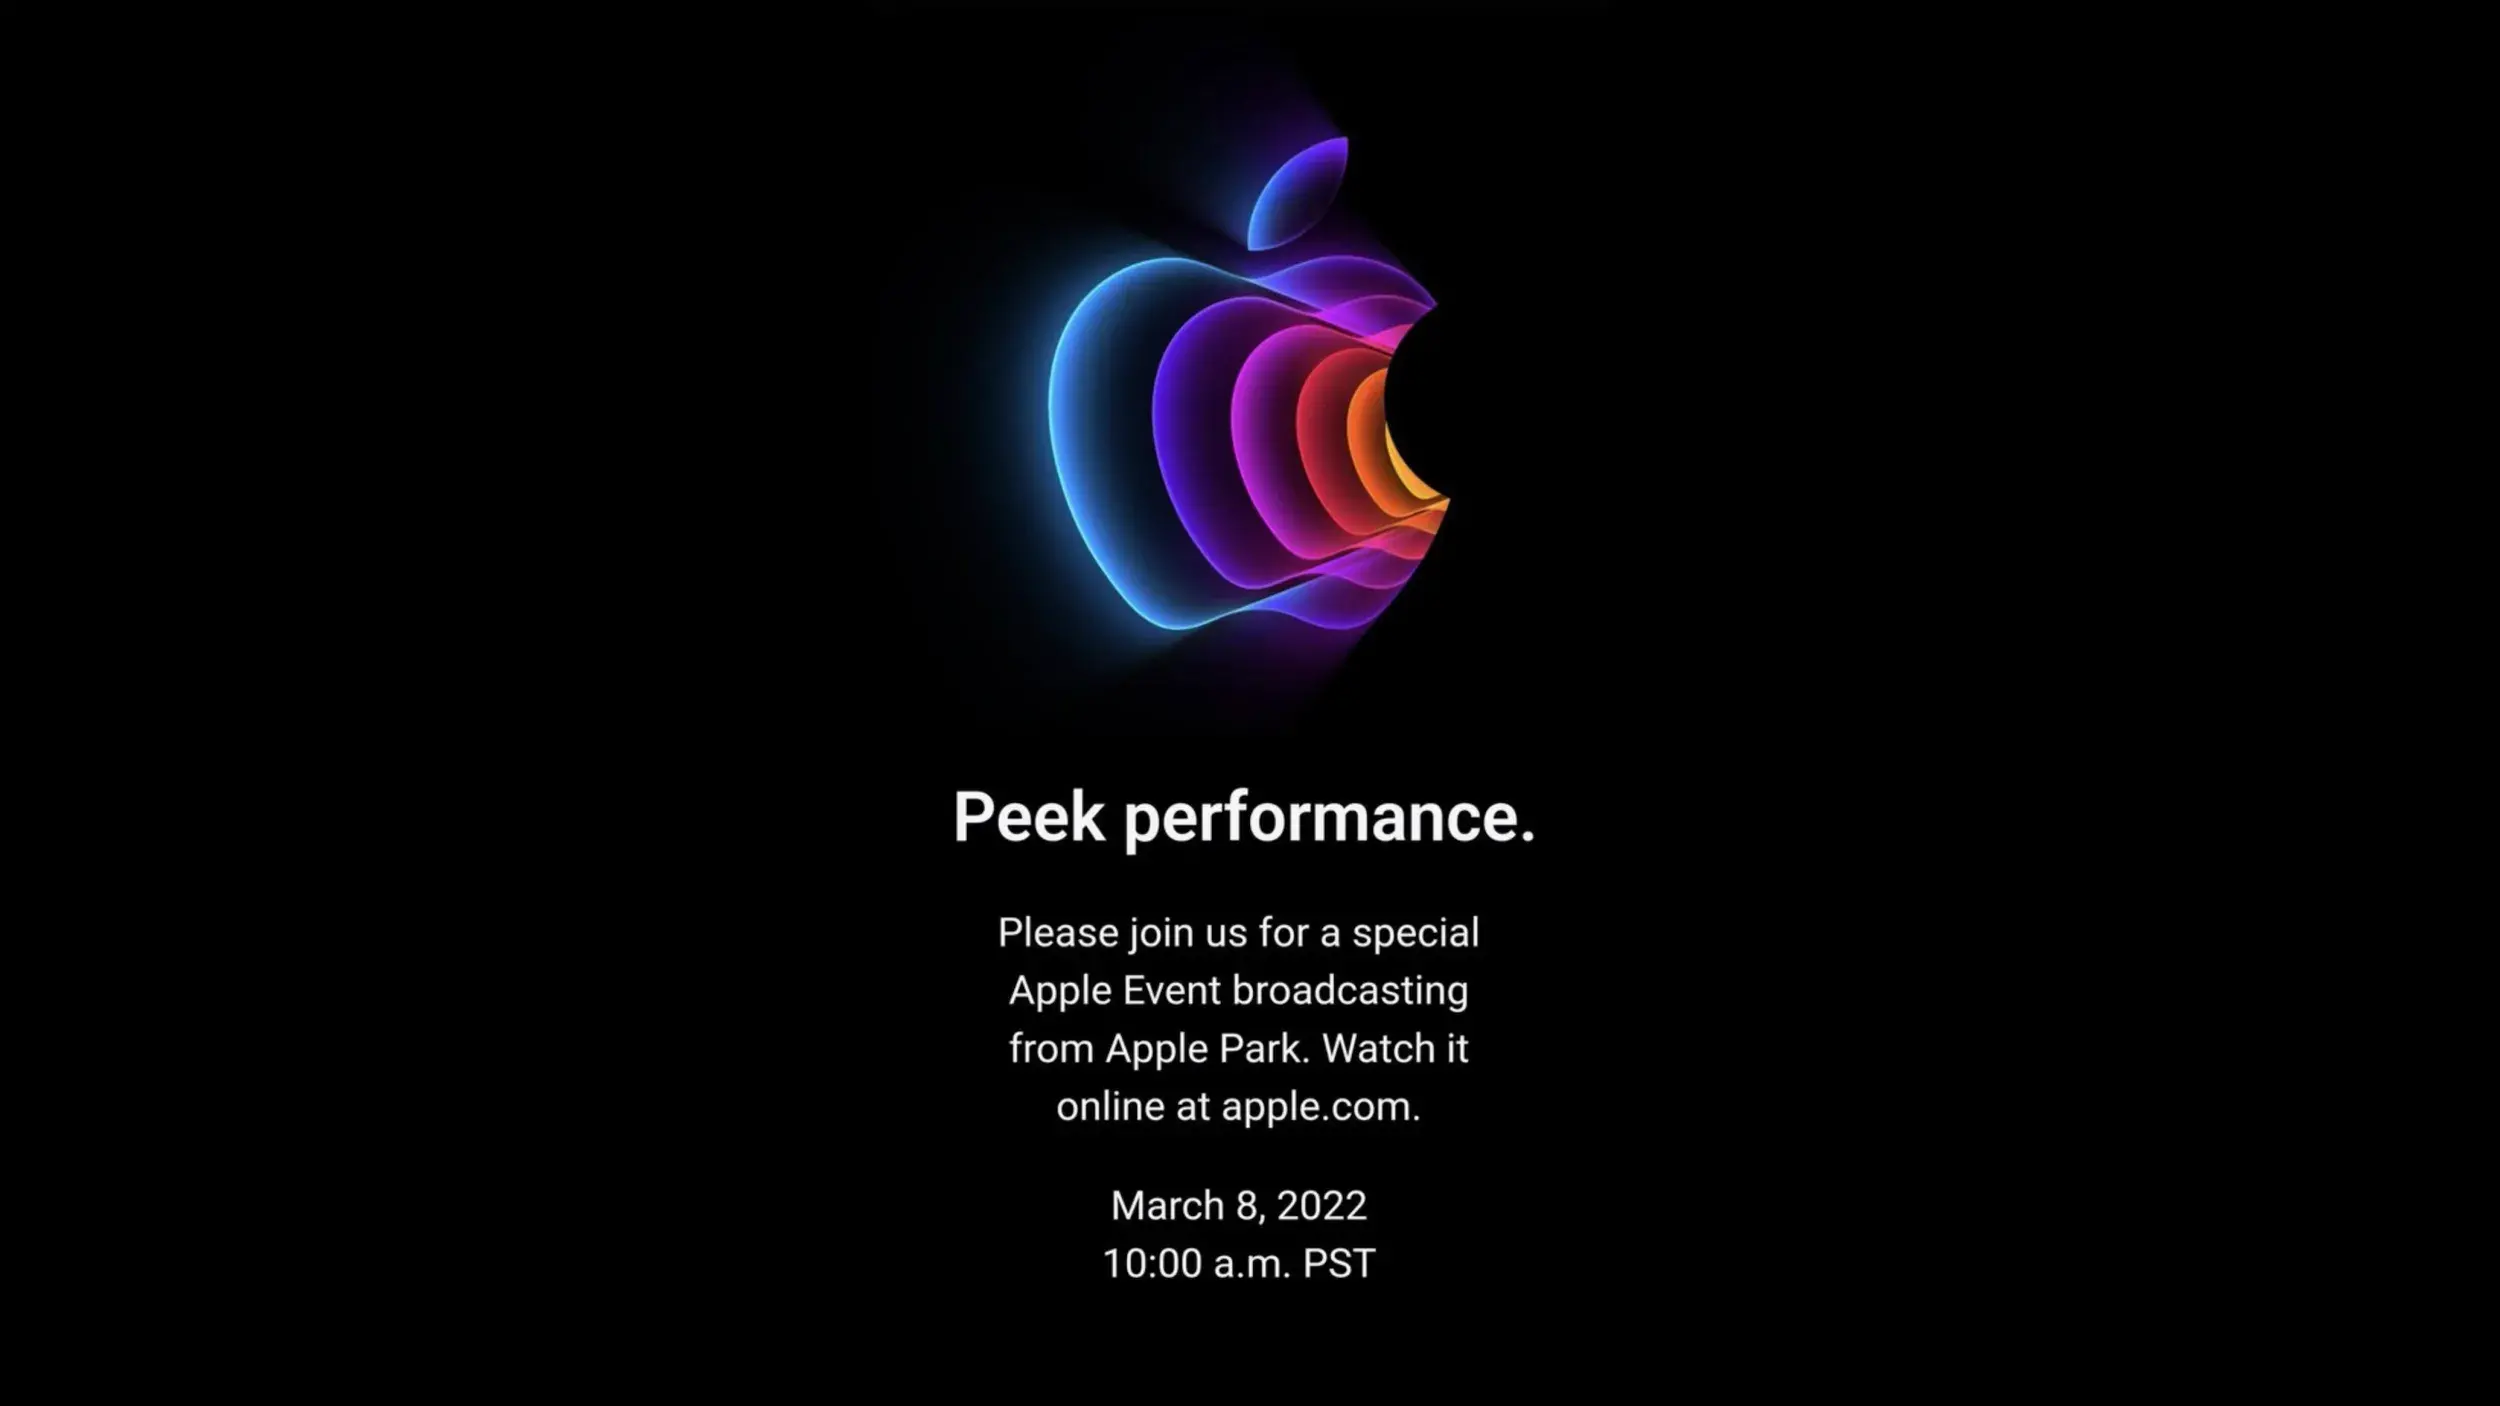 Возможно, стоило сохранить логотип для последнего мероприятия Apple в сентябре 2022 года?  - iPhone 14 станет iPhone 13S: шедевр Стива Джобса достиг своего пика, но Apple делает Макса